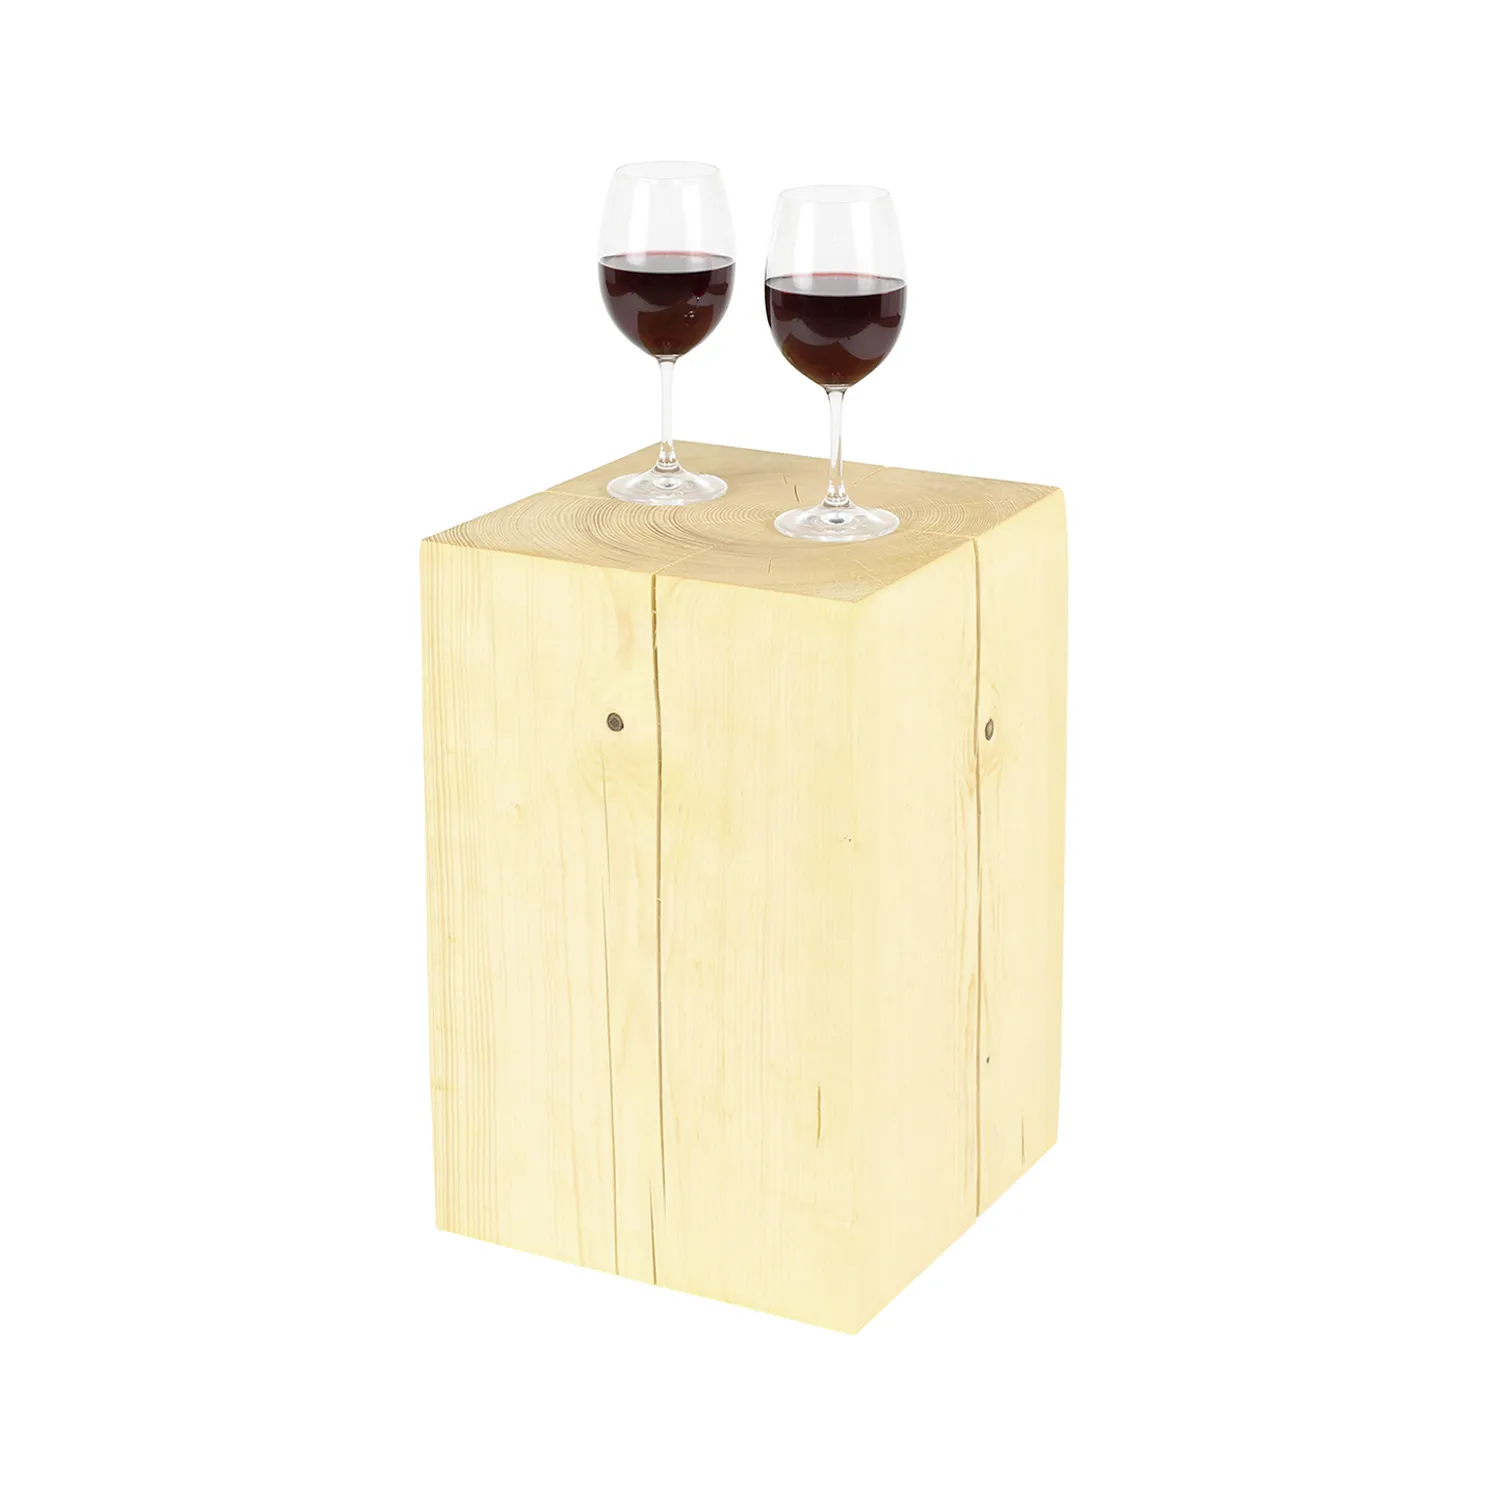 Natur geölter Holzblock aus Fichtenholz als Hocker und Tisch mit Weinglas